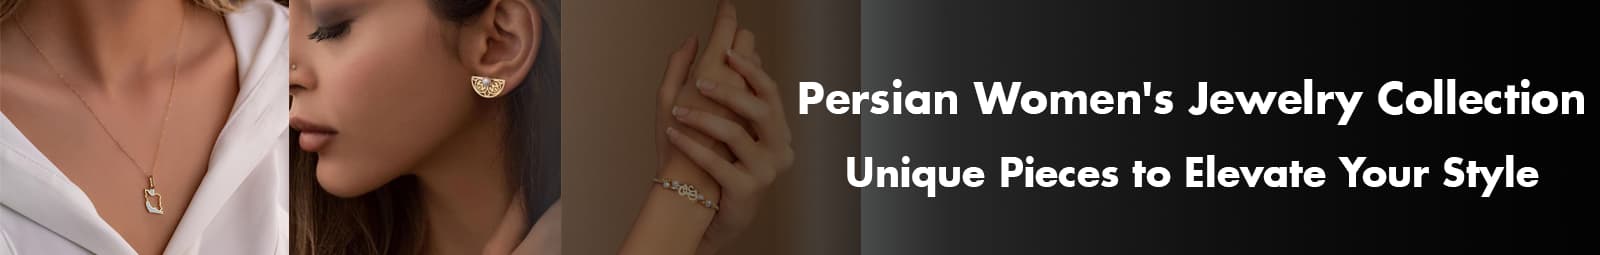 Persian women's jewelry header.jpg